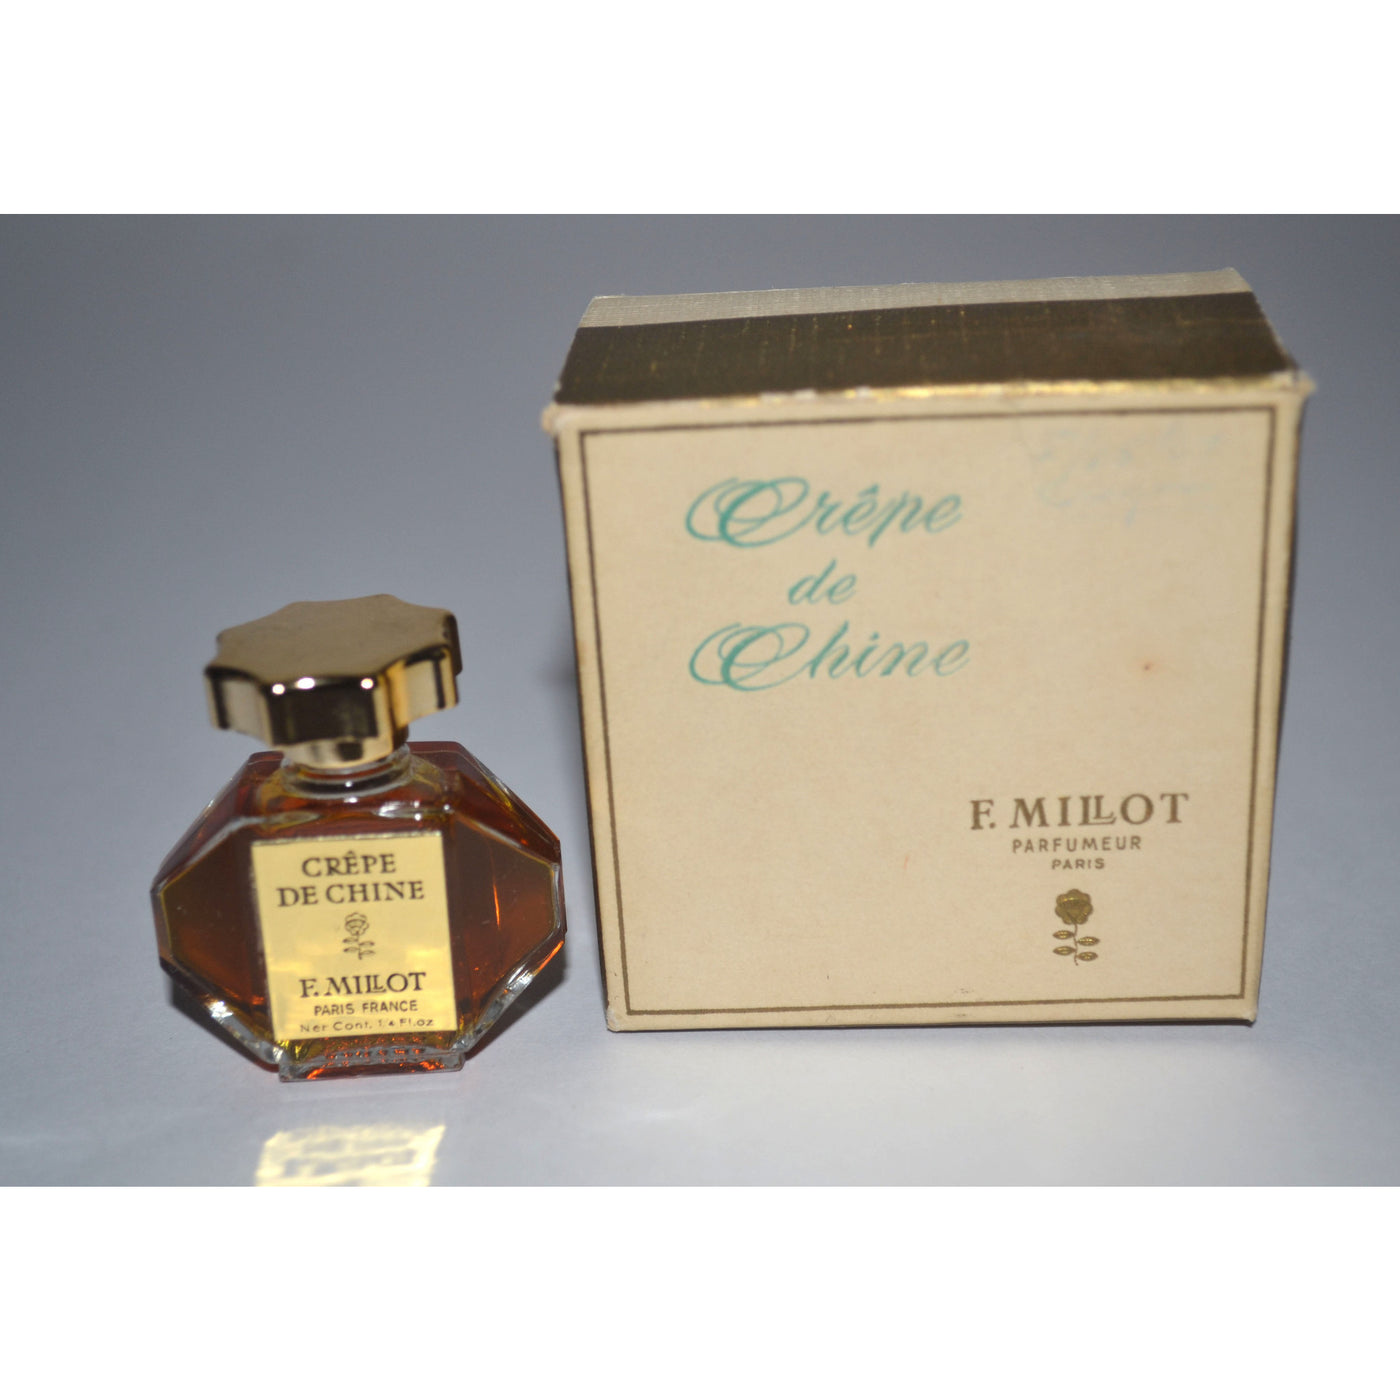 Vintage F. Millot Crepe de Chine Parfum